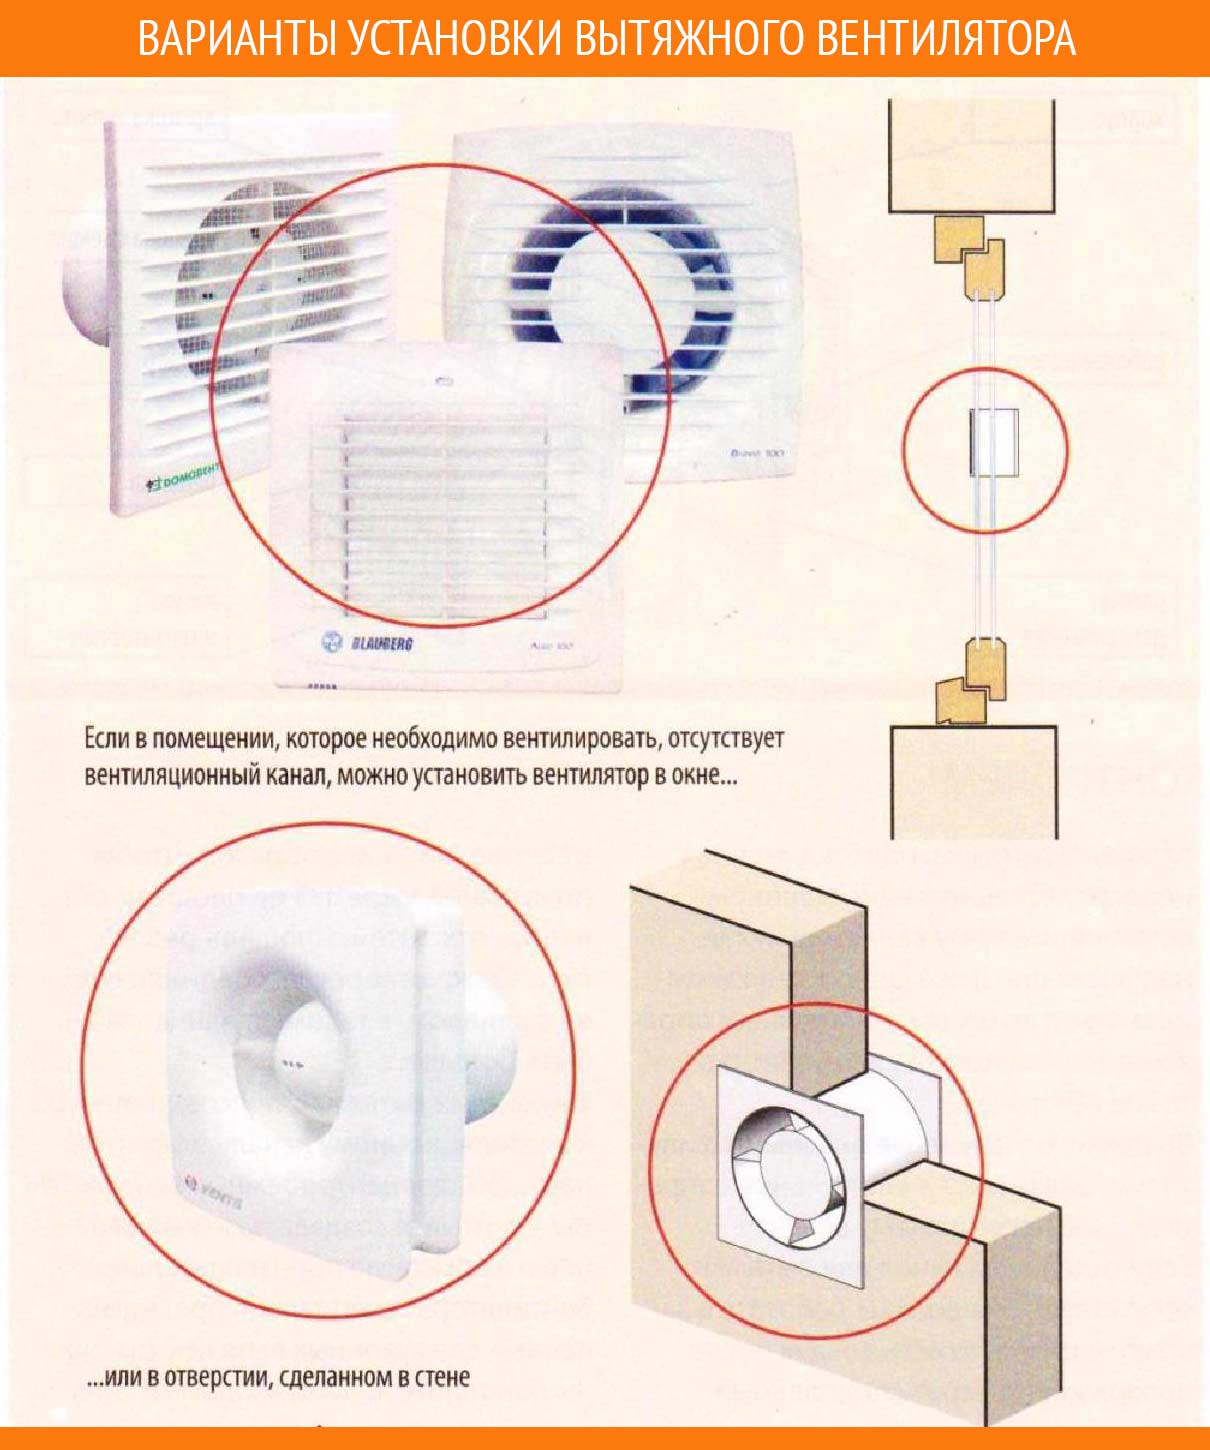 Какую вытяжку лучше выбрать для ванной комнаты и туалета? обзор вариантов туалетных вытяжек и вентиляторов